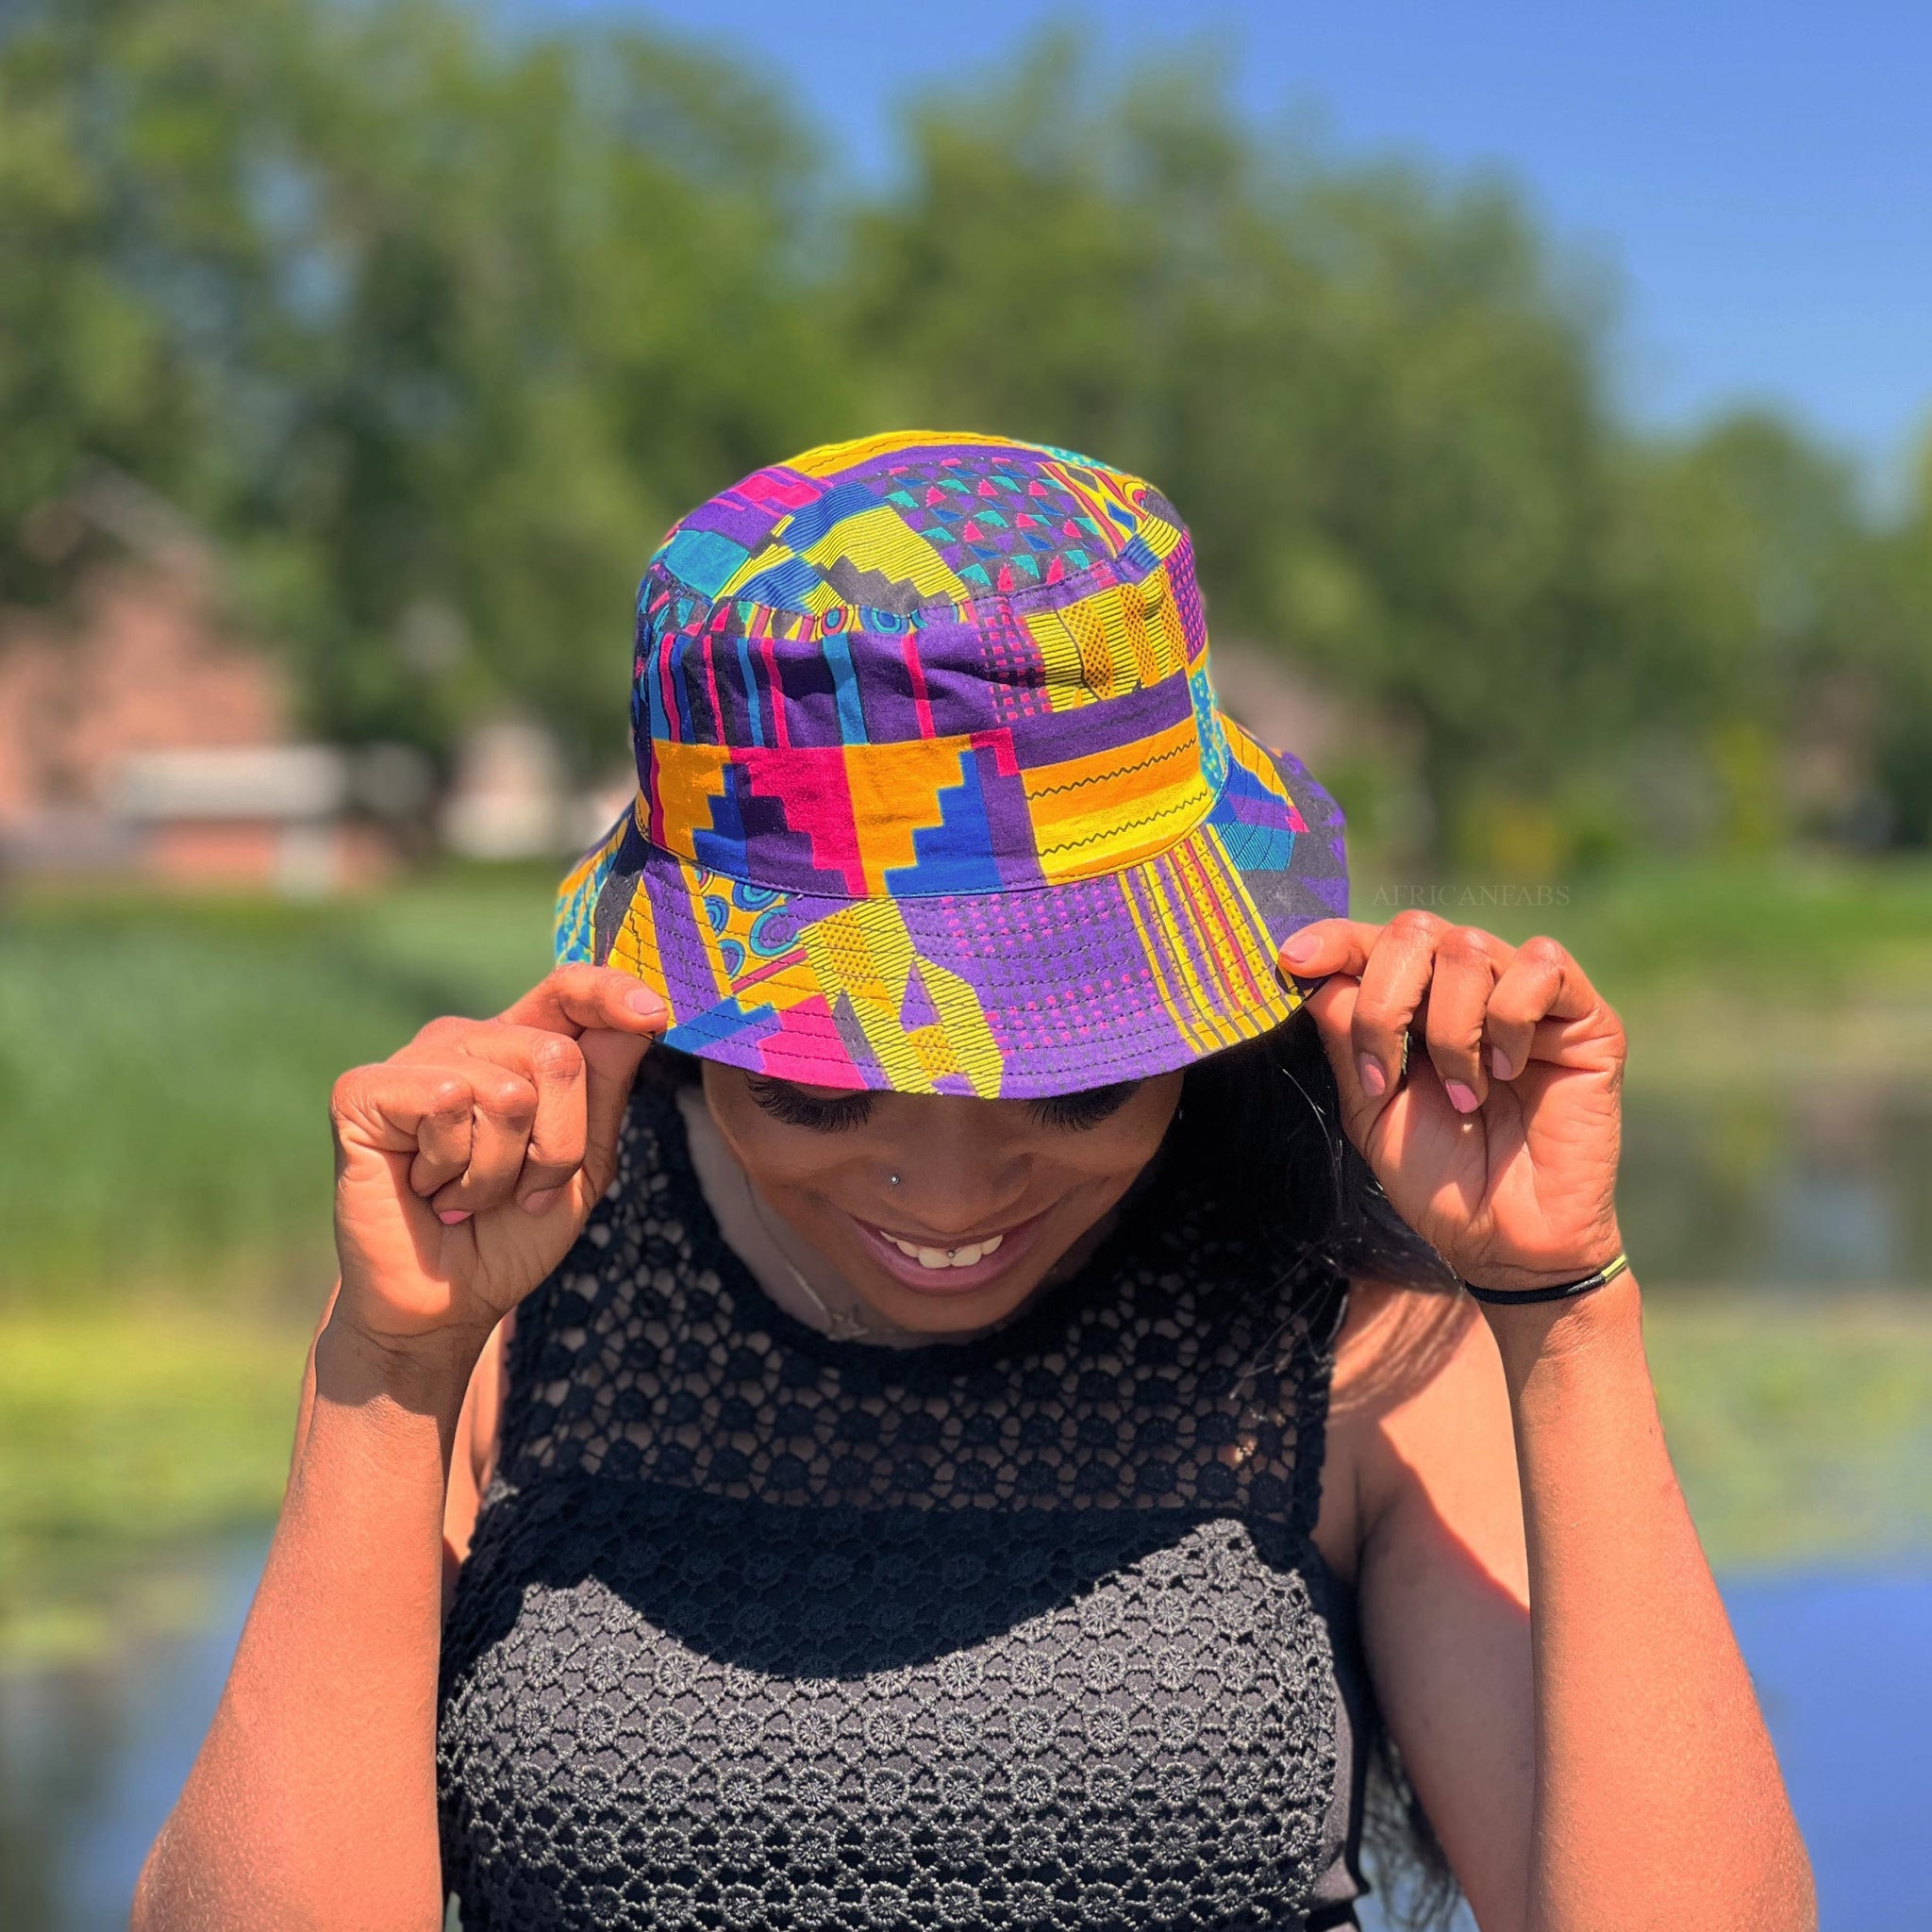 Chapeau bob / Bucket hat imprimé africain - Multi-couleurs Kente violet - tailles enfants et adultes (Unisexe)